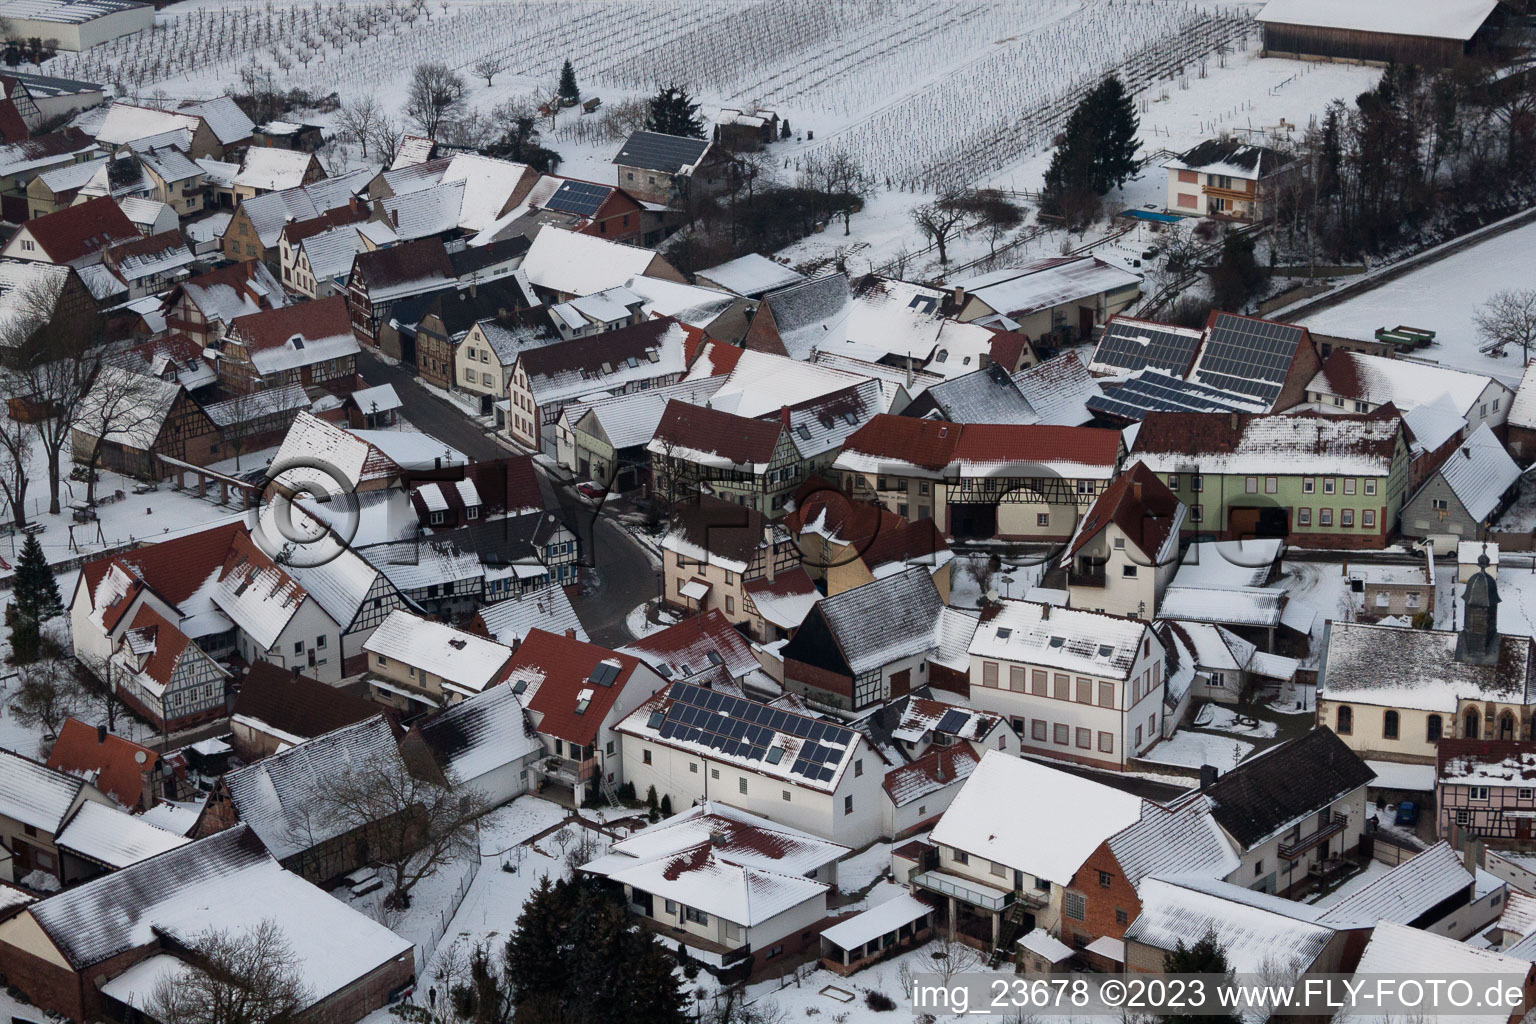 Dierbach dans le département Rhénanie-Palatinat, Allemagne vu d'un drone